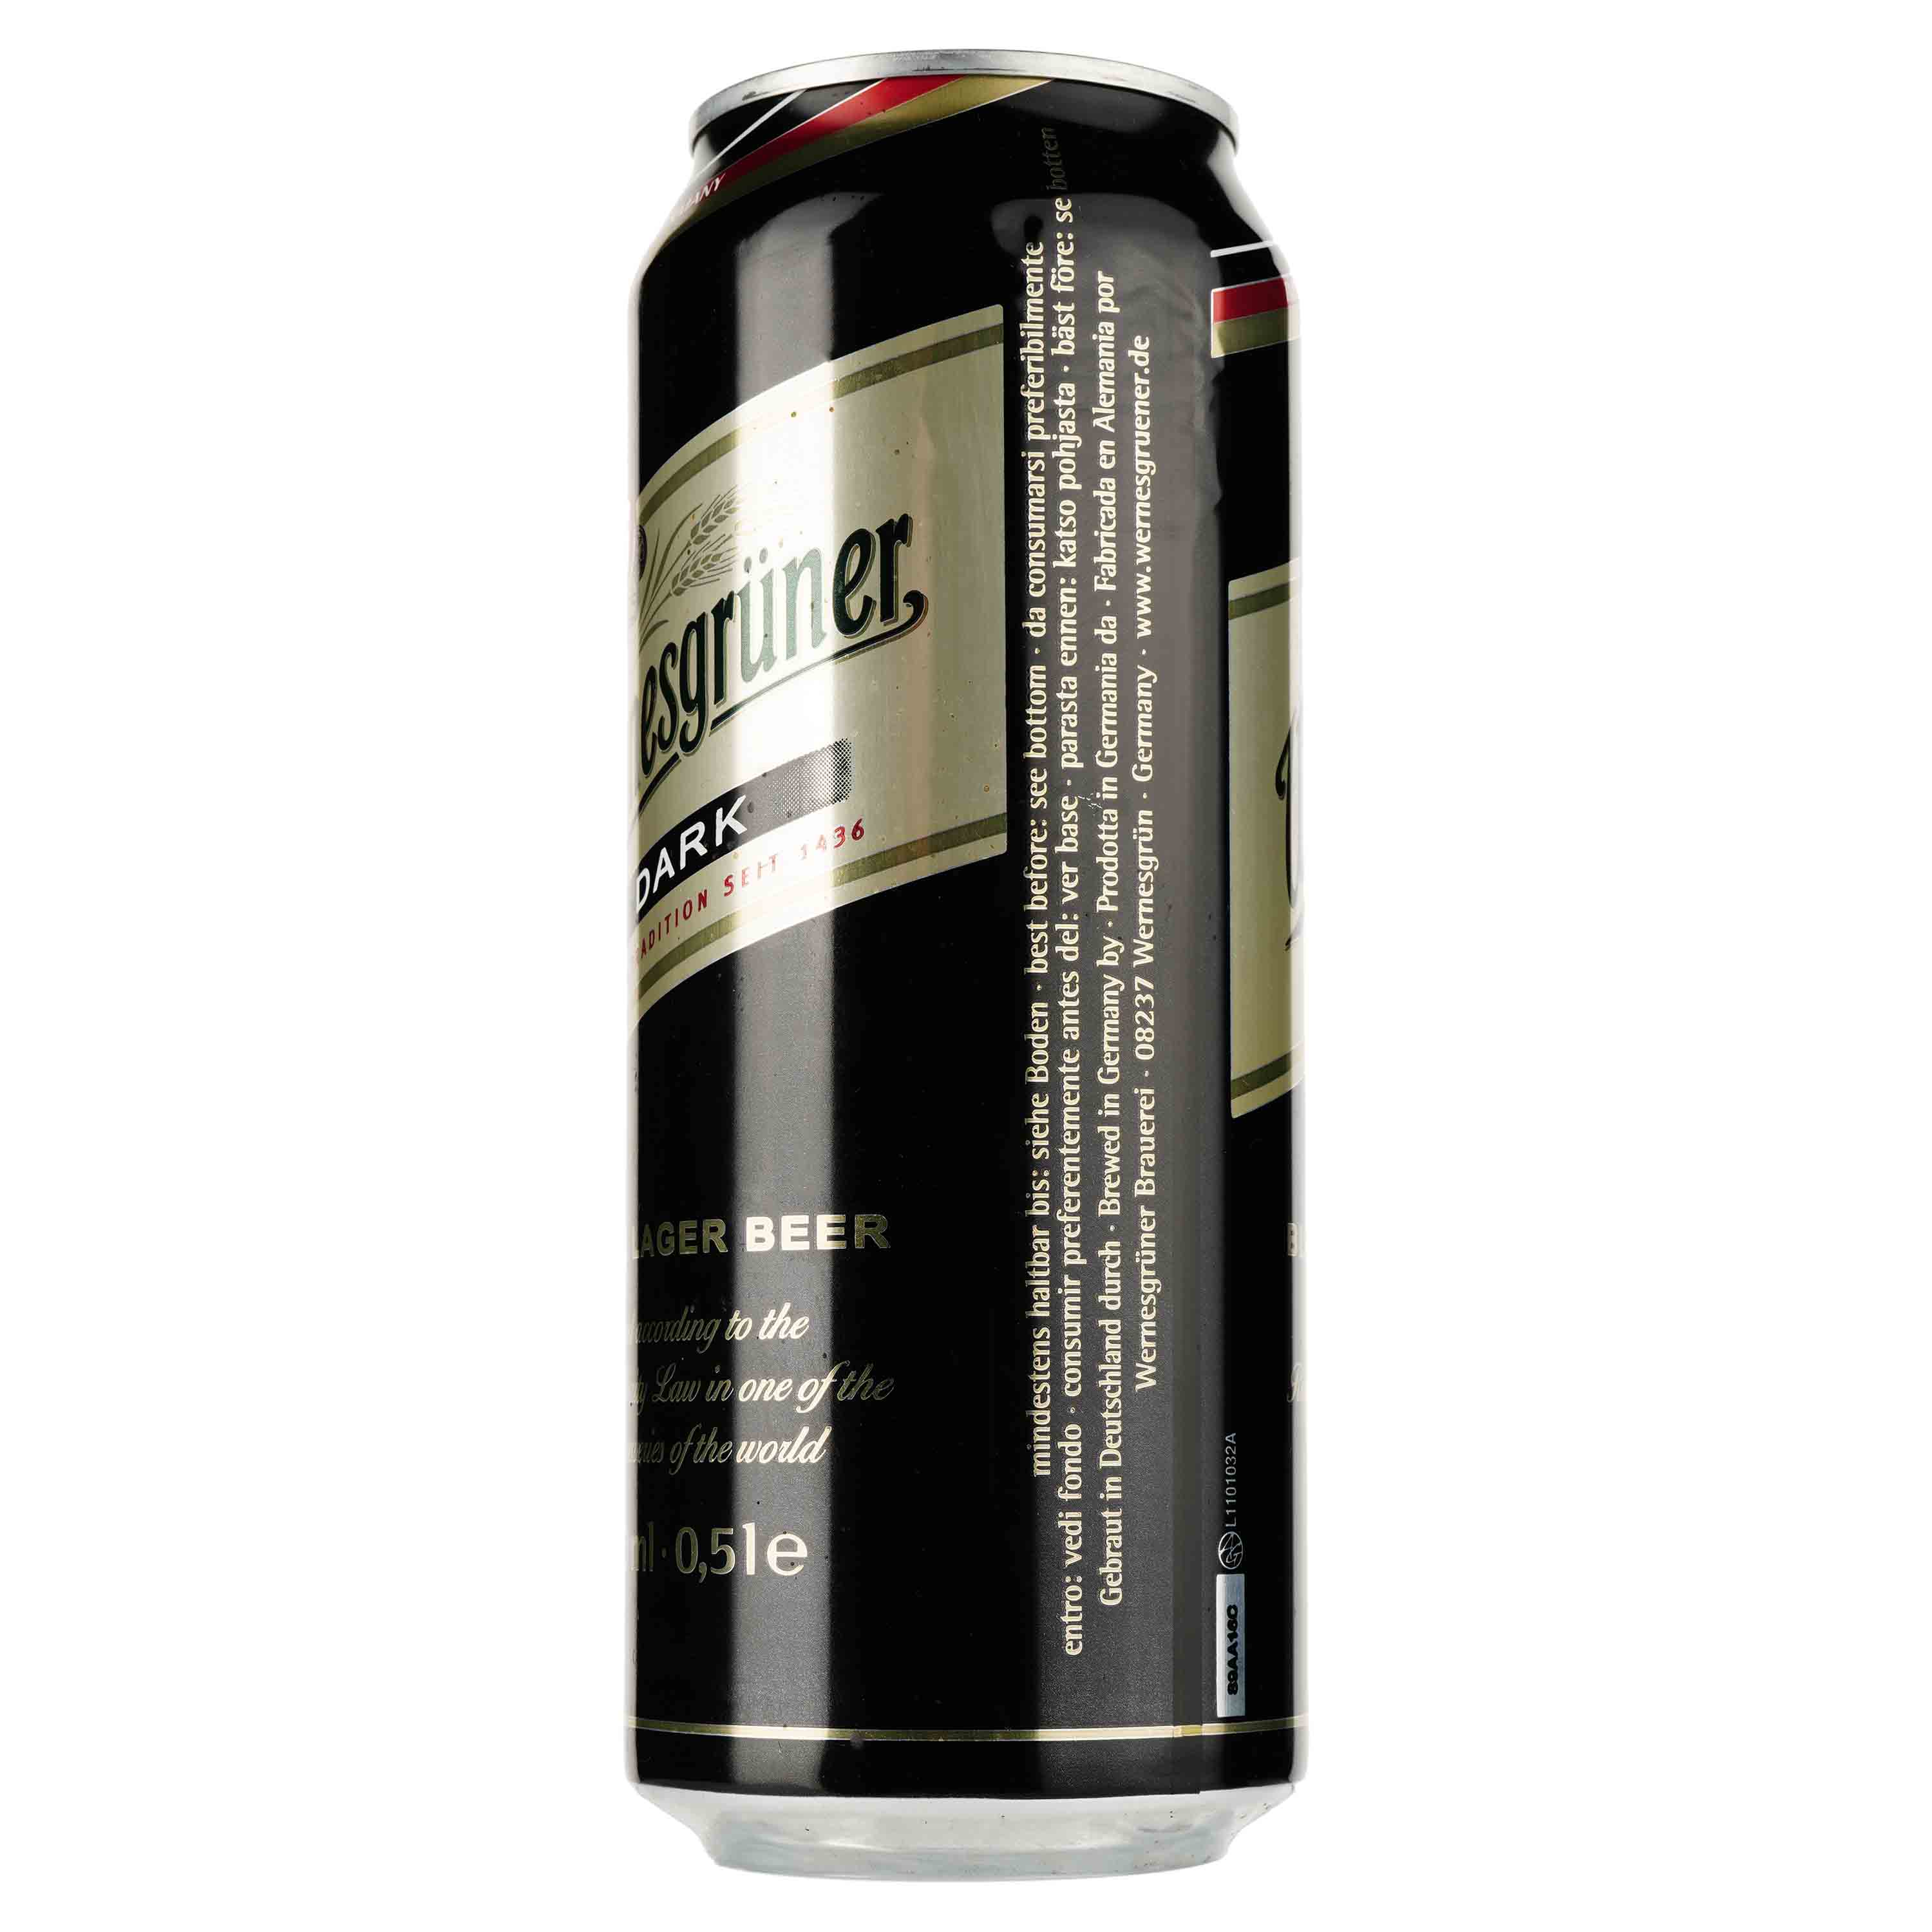 Пиво Wernesgruner Dark, темное, фильтрованное, 4,9%, ж/б, 0,5 л - фото 2